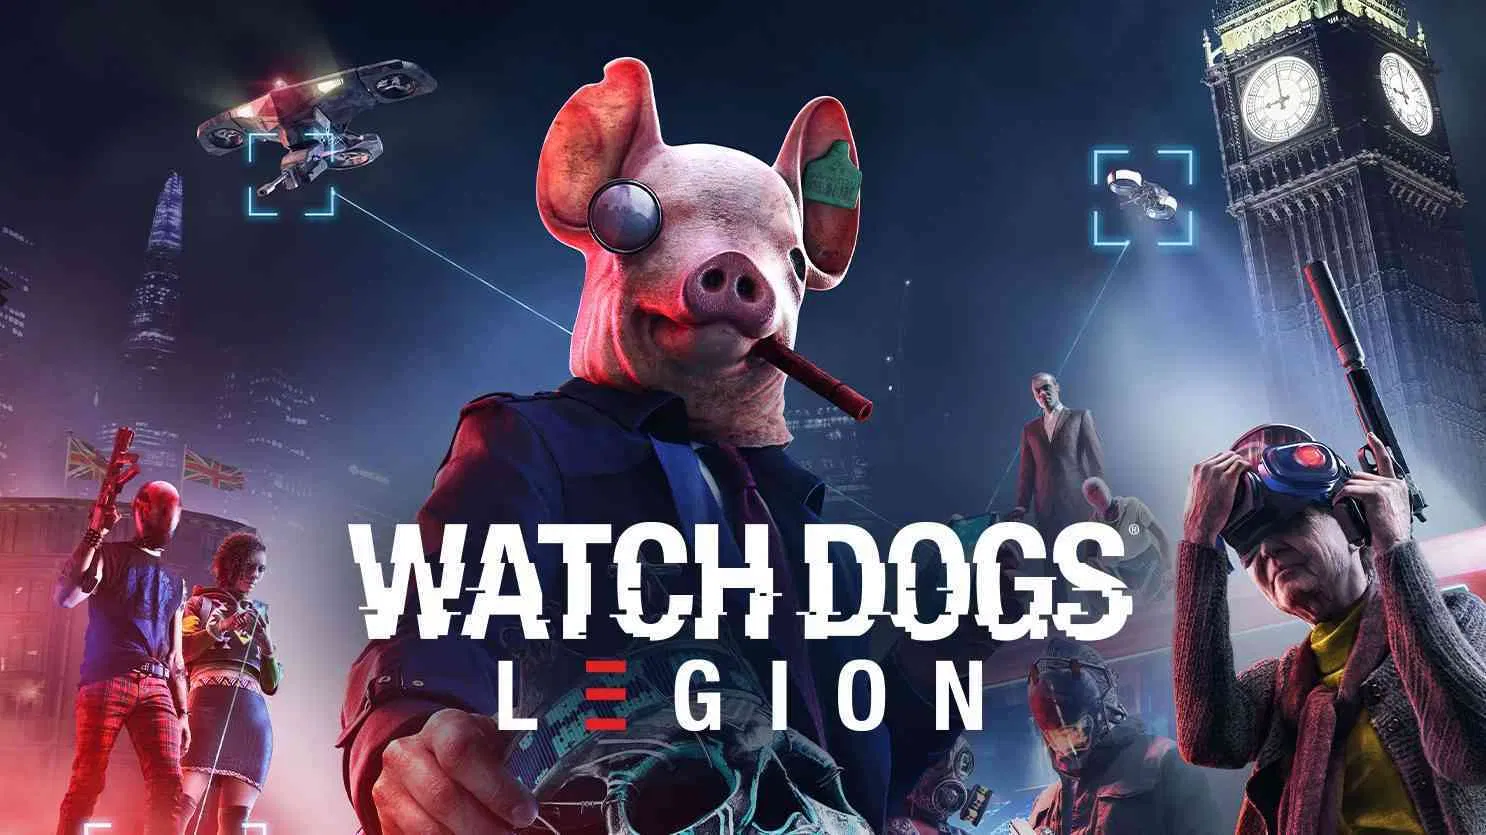 Watch dogs legion: novas imagens vazadas do game | c4617717 cropped watch dogs legion logo 2020 | smart watch | watch dogs legion smart watch